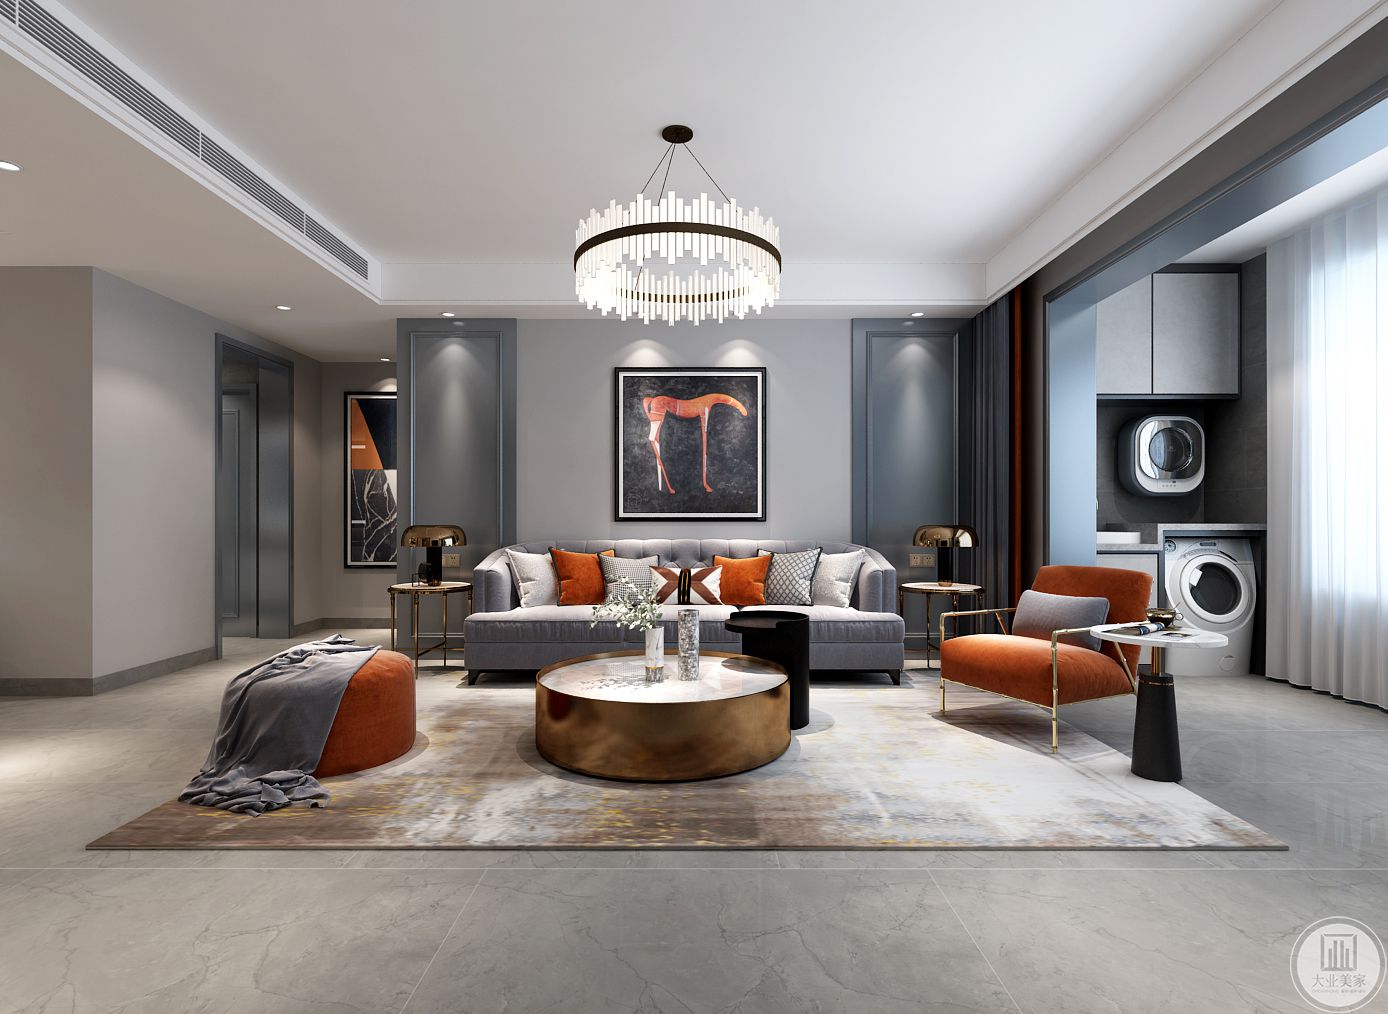 沙发背景造型与影视墙遥相呼应，金属元素家具搭配橘色软装，即有视觉冲击感又舒适温馨